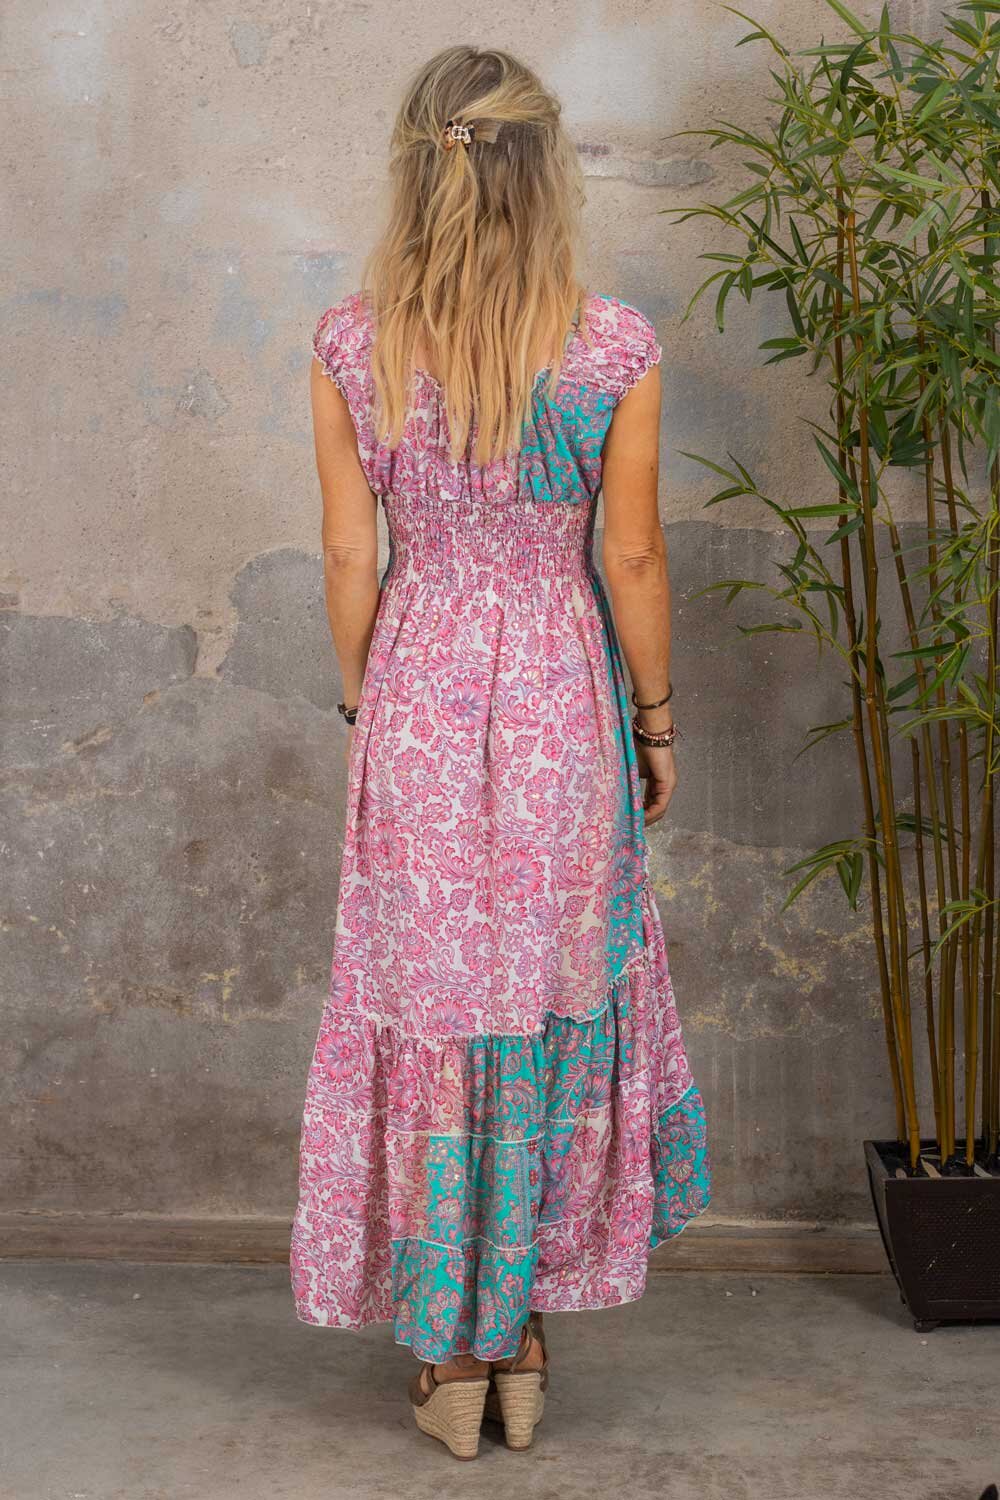 Estella dress - Floral pattern - Teal/Pink